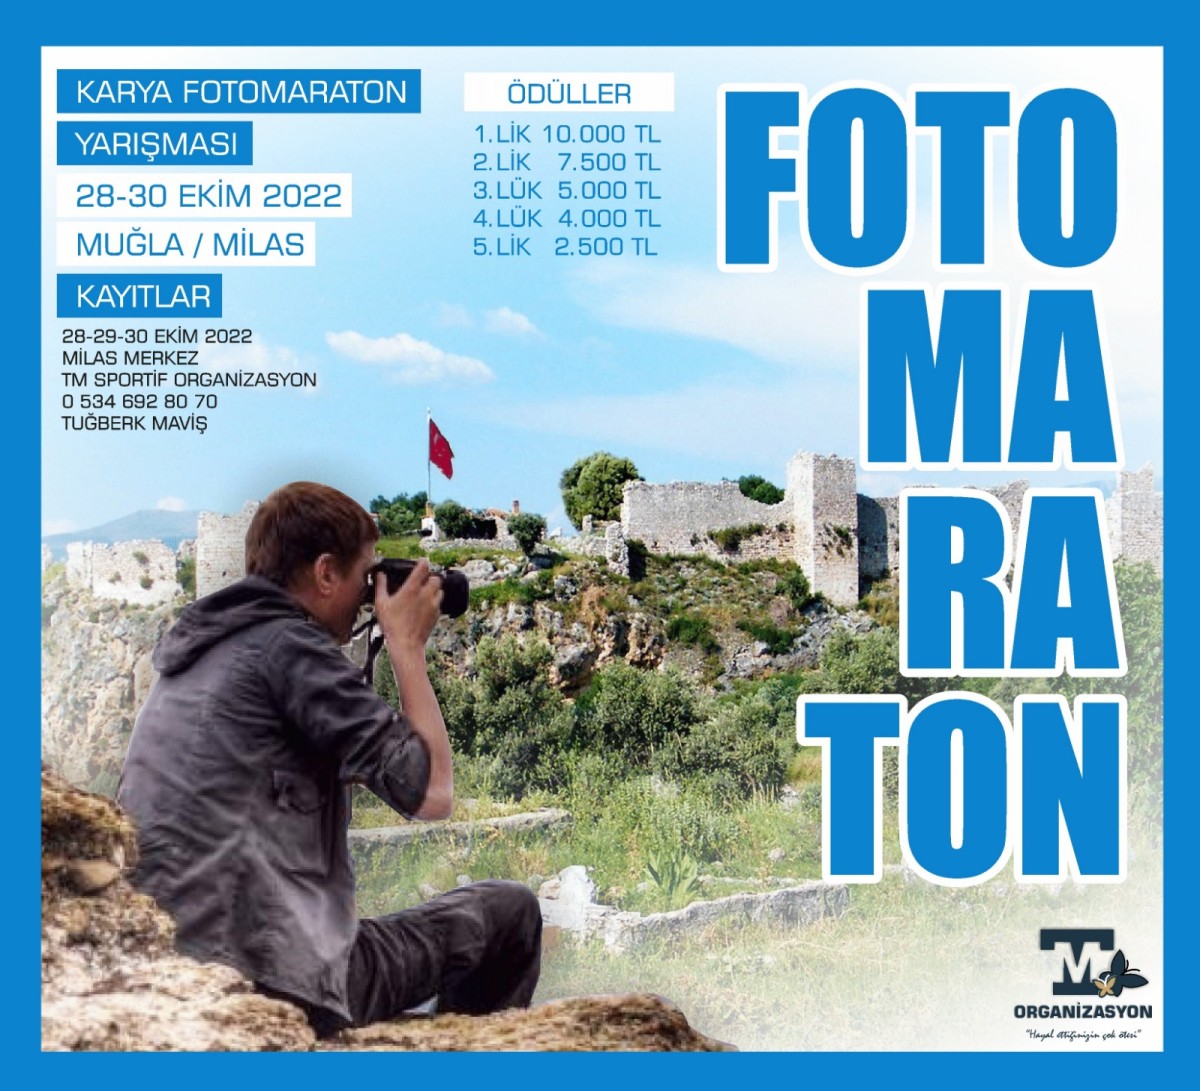 Muğla “Karya Fotomaratona” hazırlanıyor